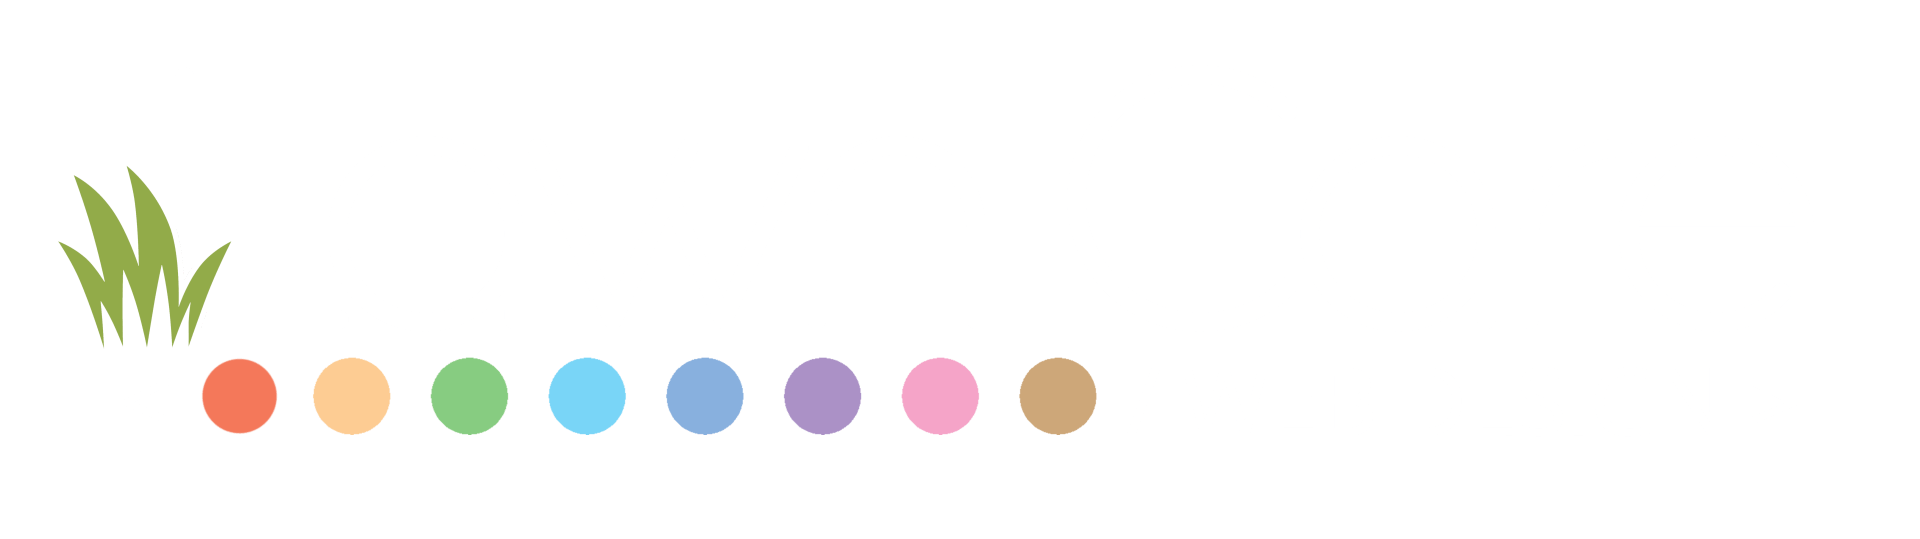 Lawn Care Web Design Logo